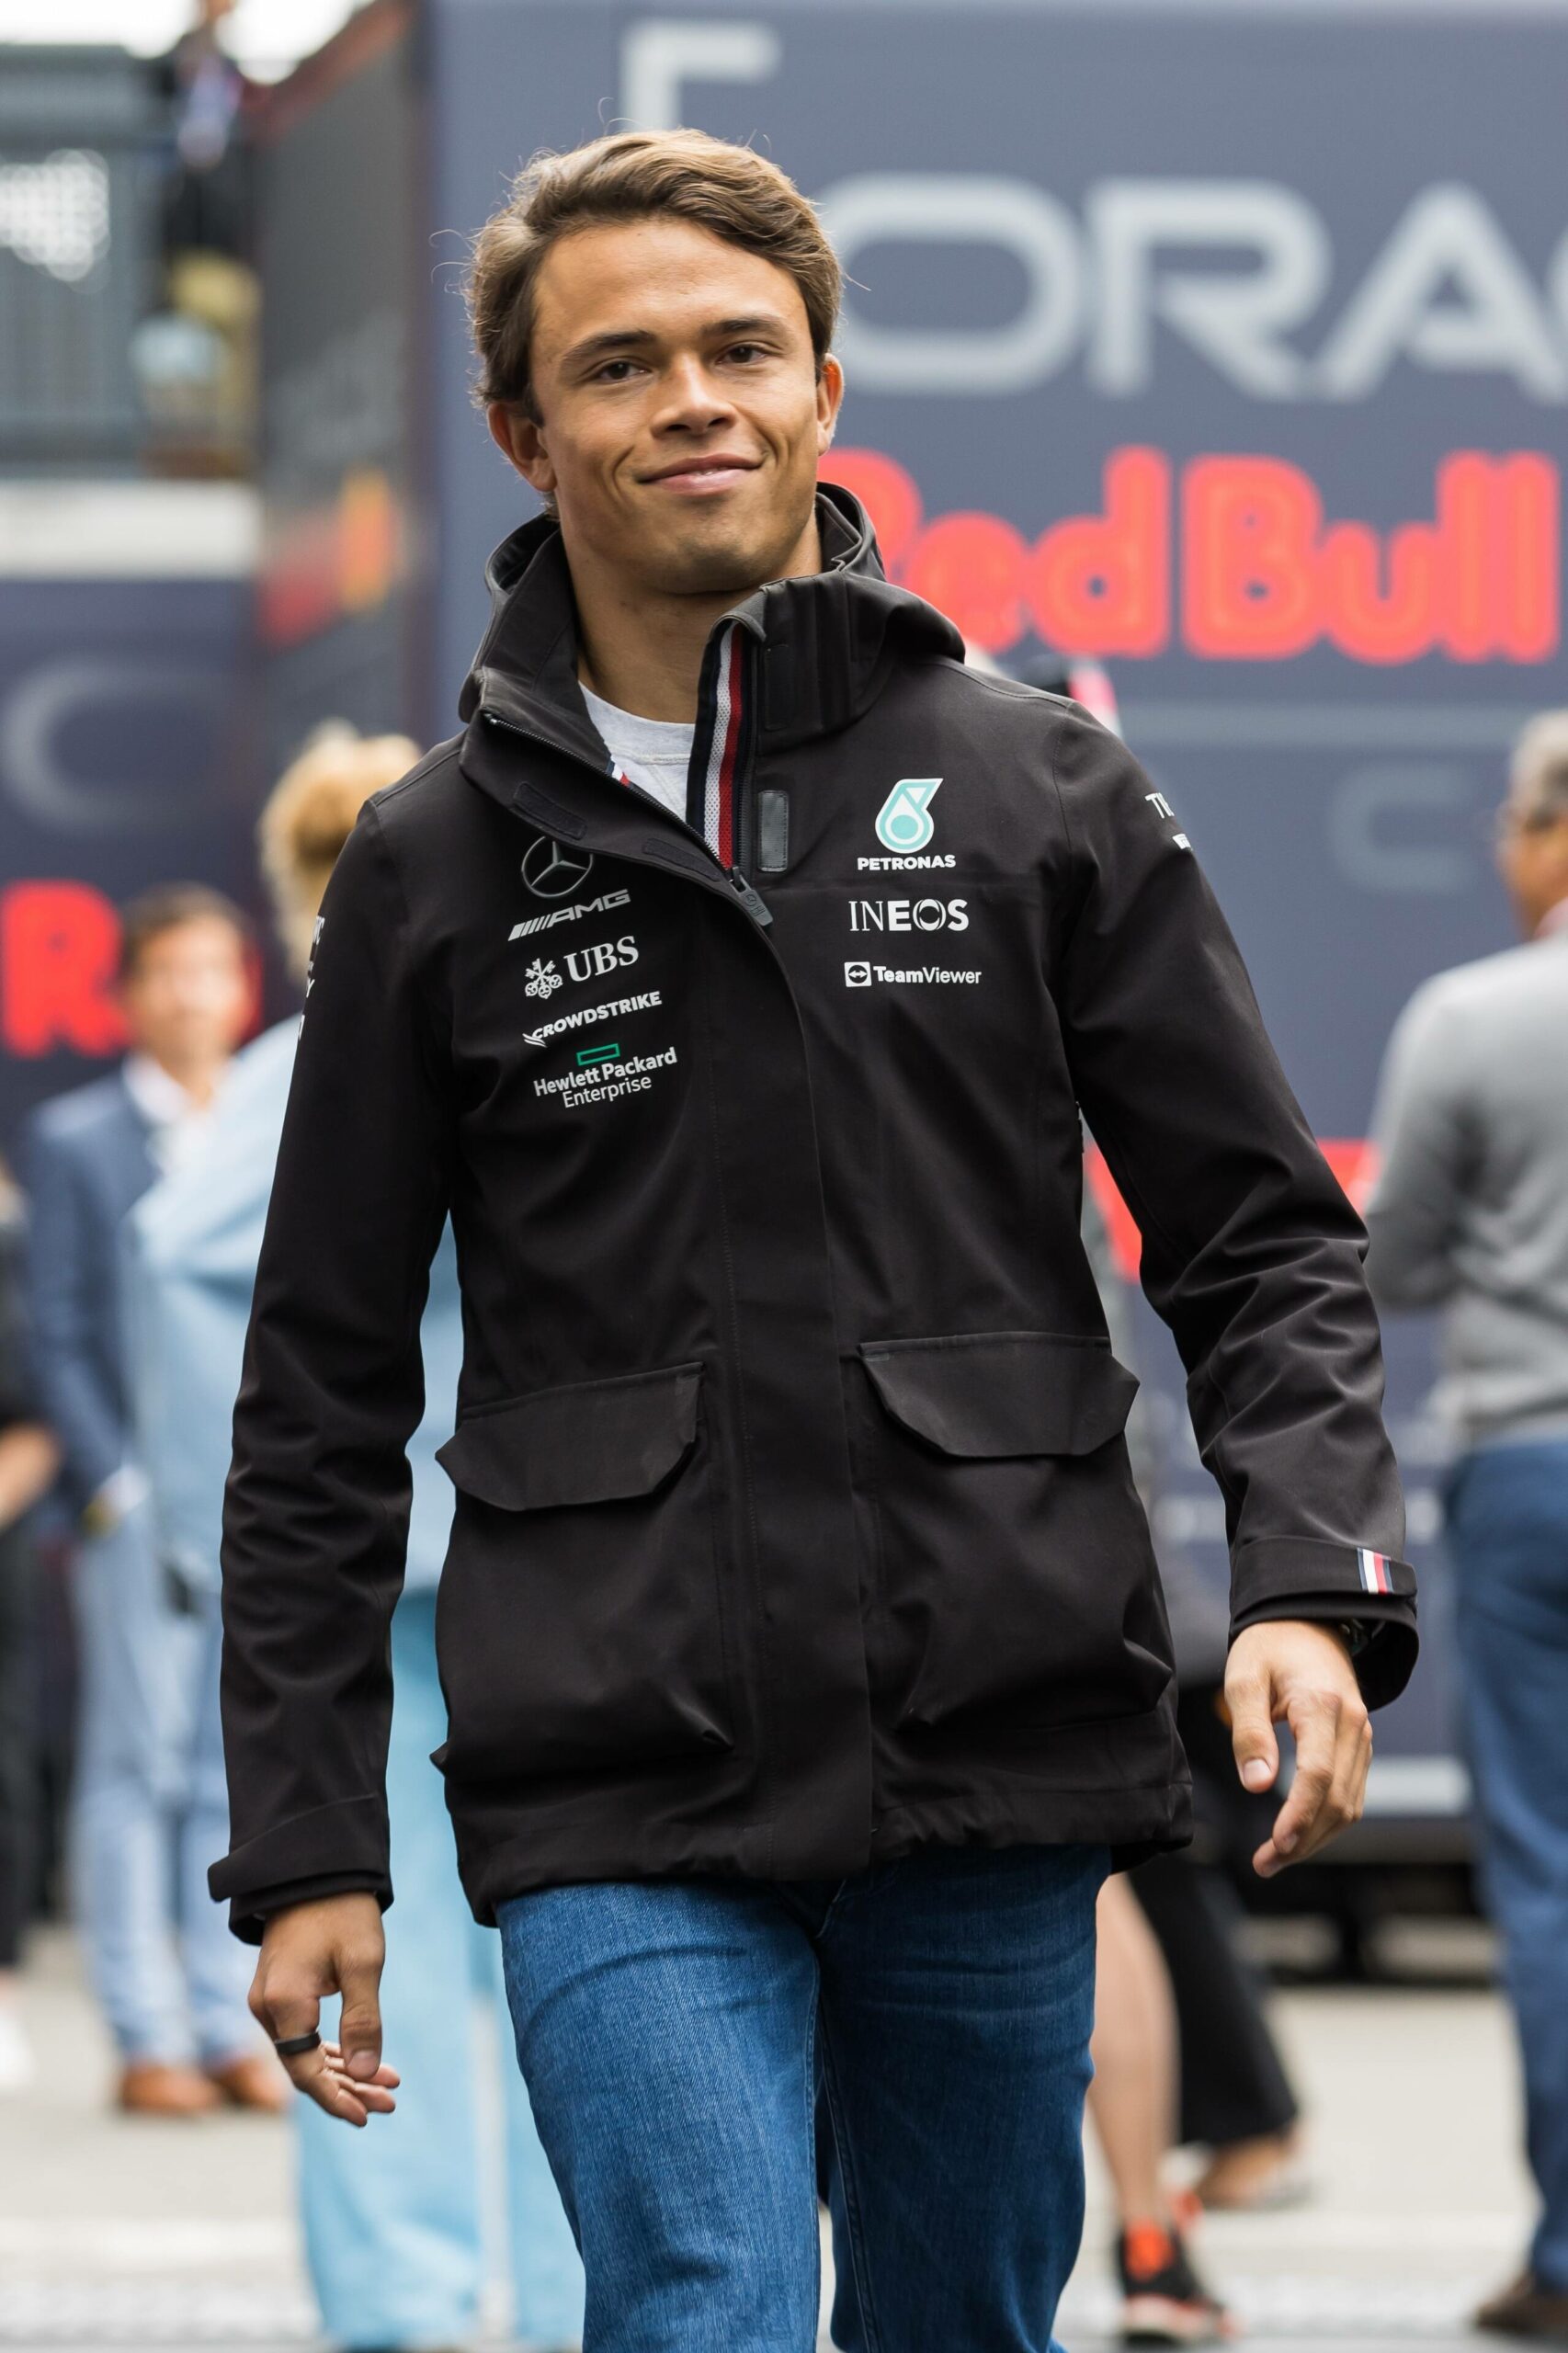 Der Holländer Nick de Vries steht vor einem Engagement beim Red-Bull-Farmteam Alpha Tauri.